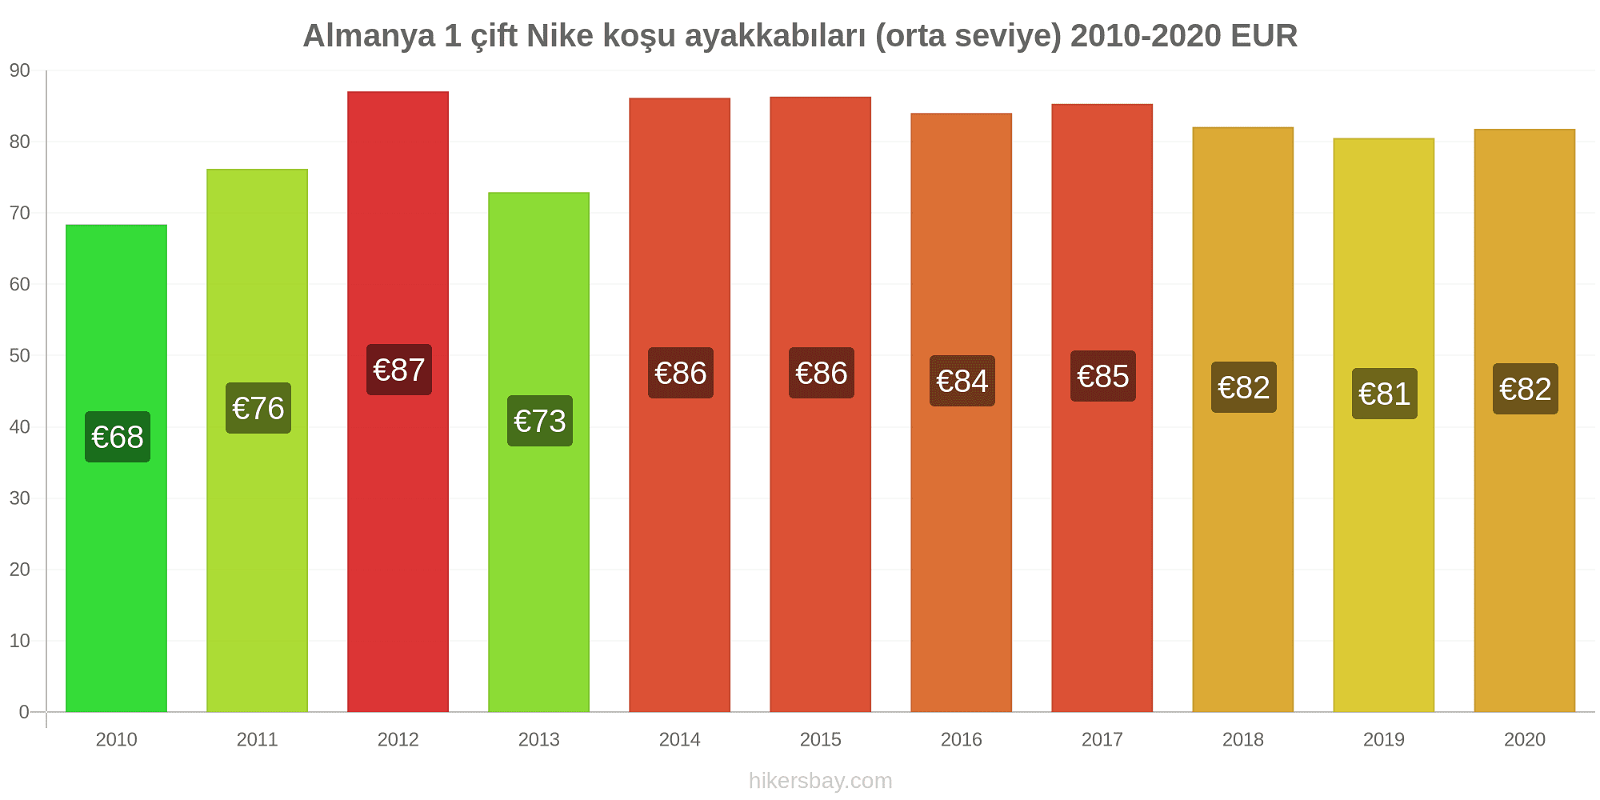 Almanya fiyat değişiklikleri 1 çift Nike koşu ayakkabıları (orta seviye) hikersbay.com